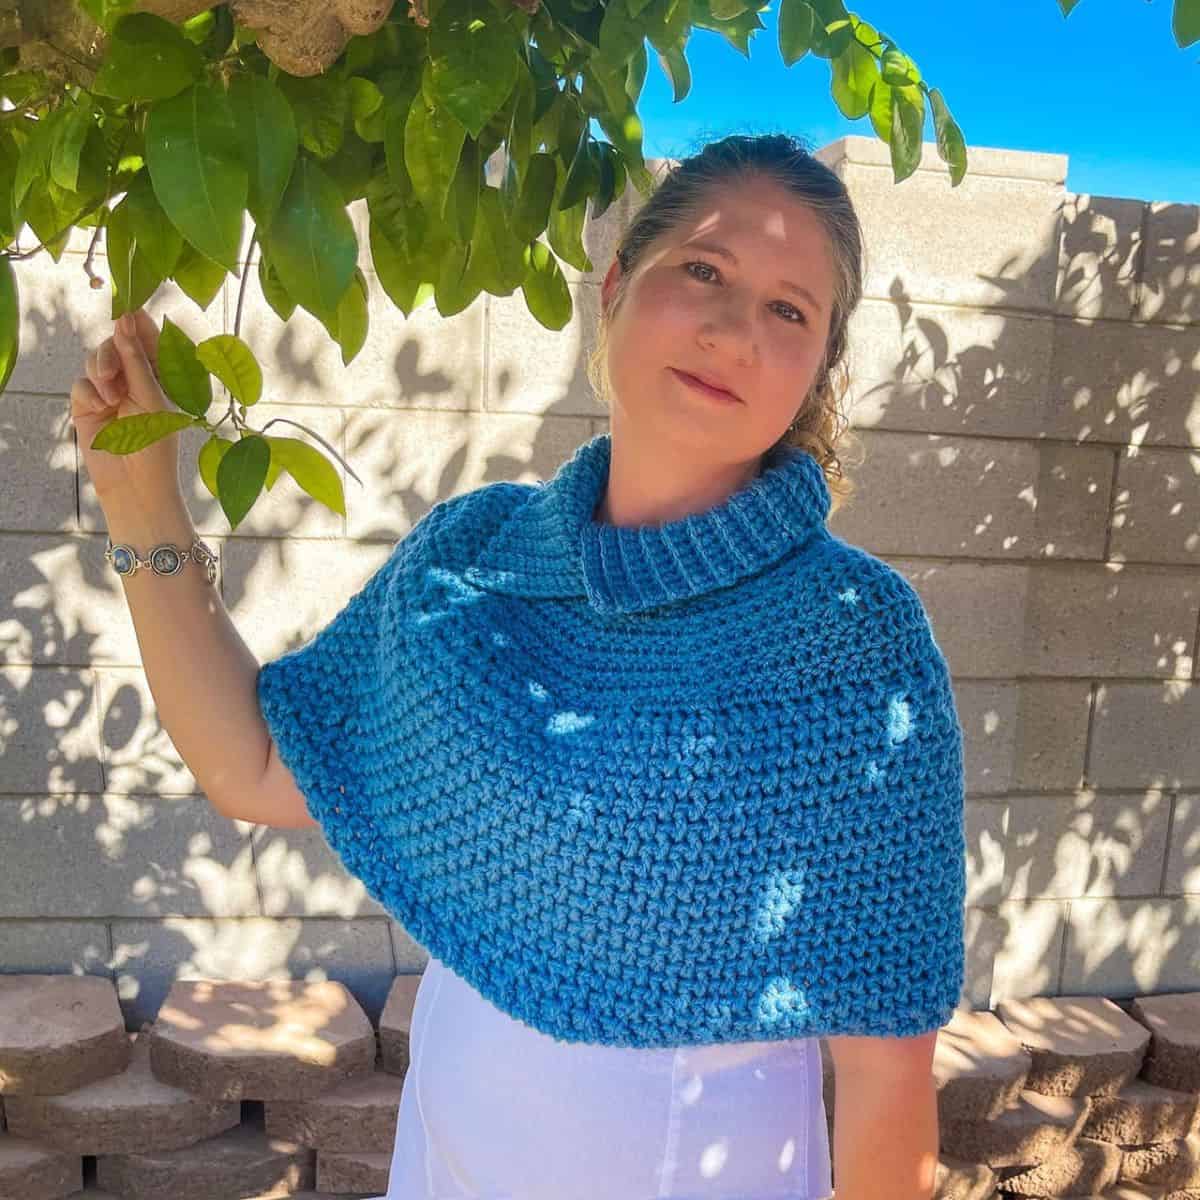 A woman wearing a blue crocheted garment.